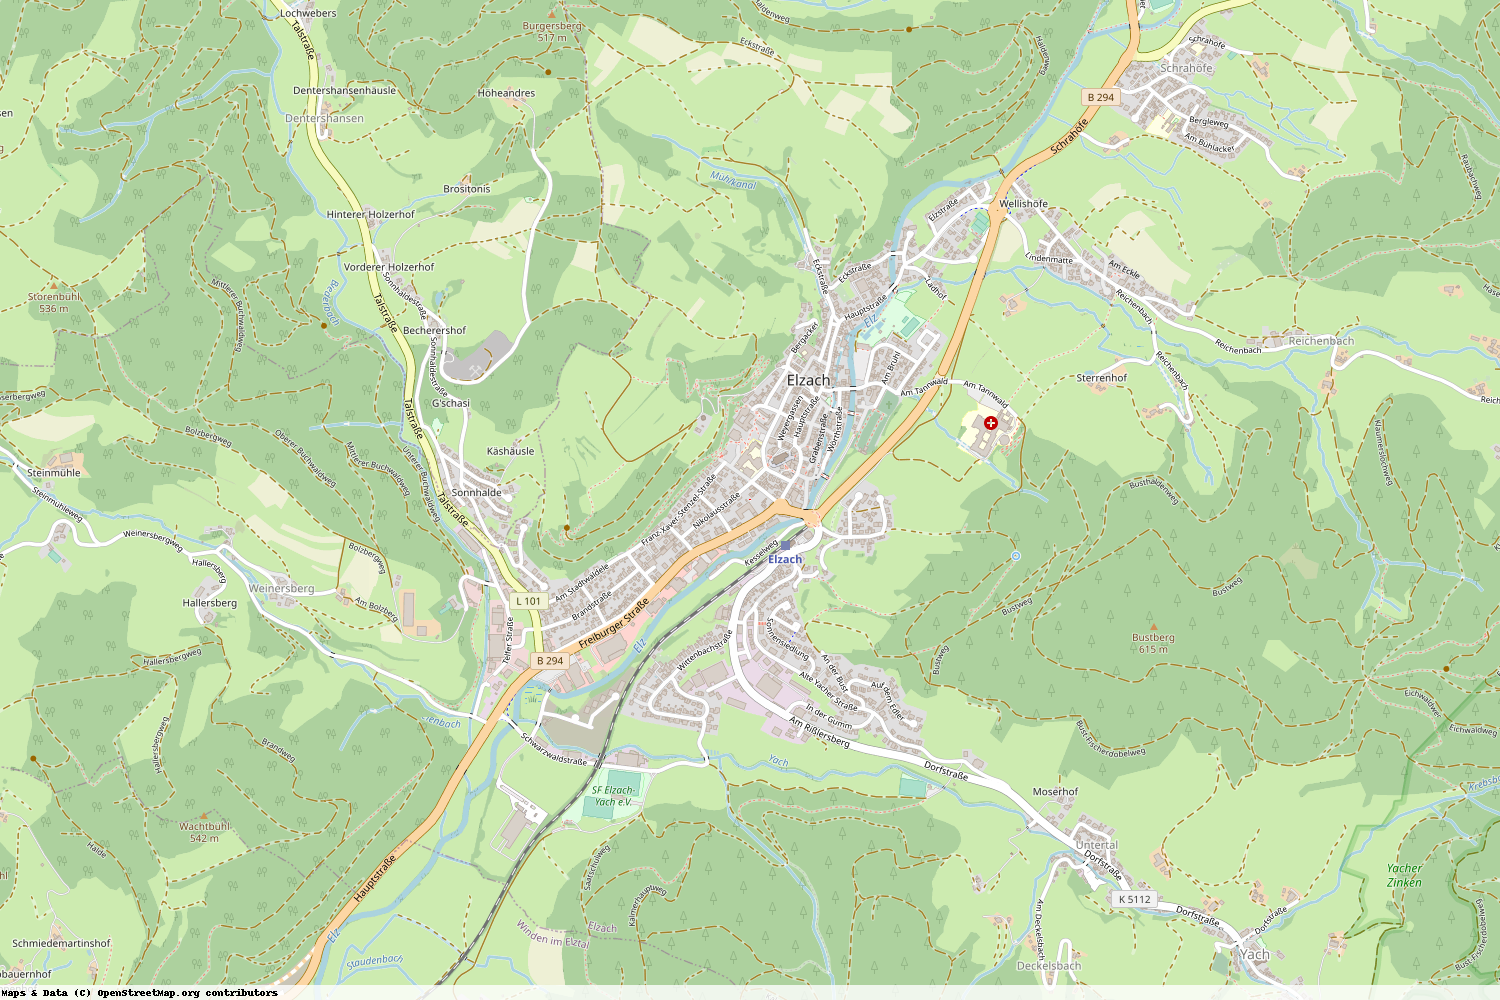 Ist gerade Stromausfall in Baden-Württemberg - Emmendingen - Elzach?